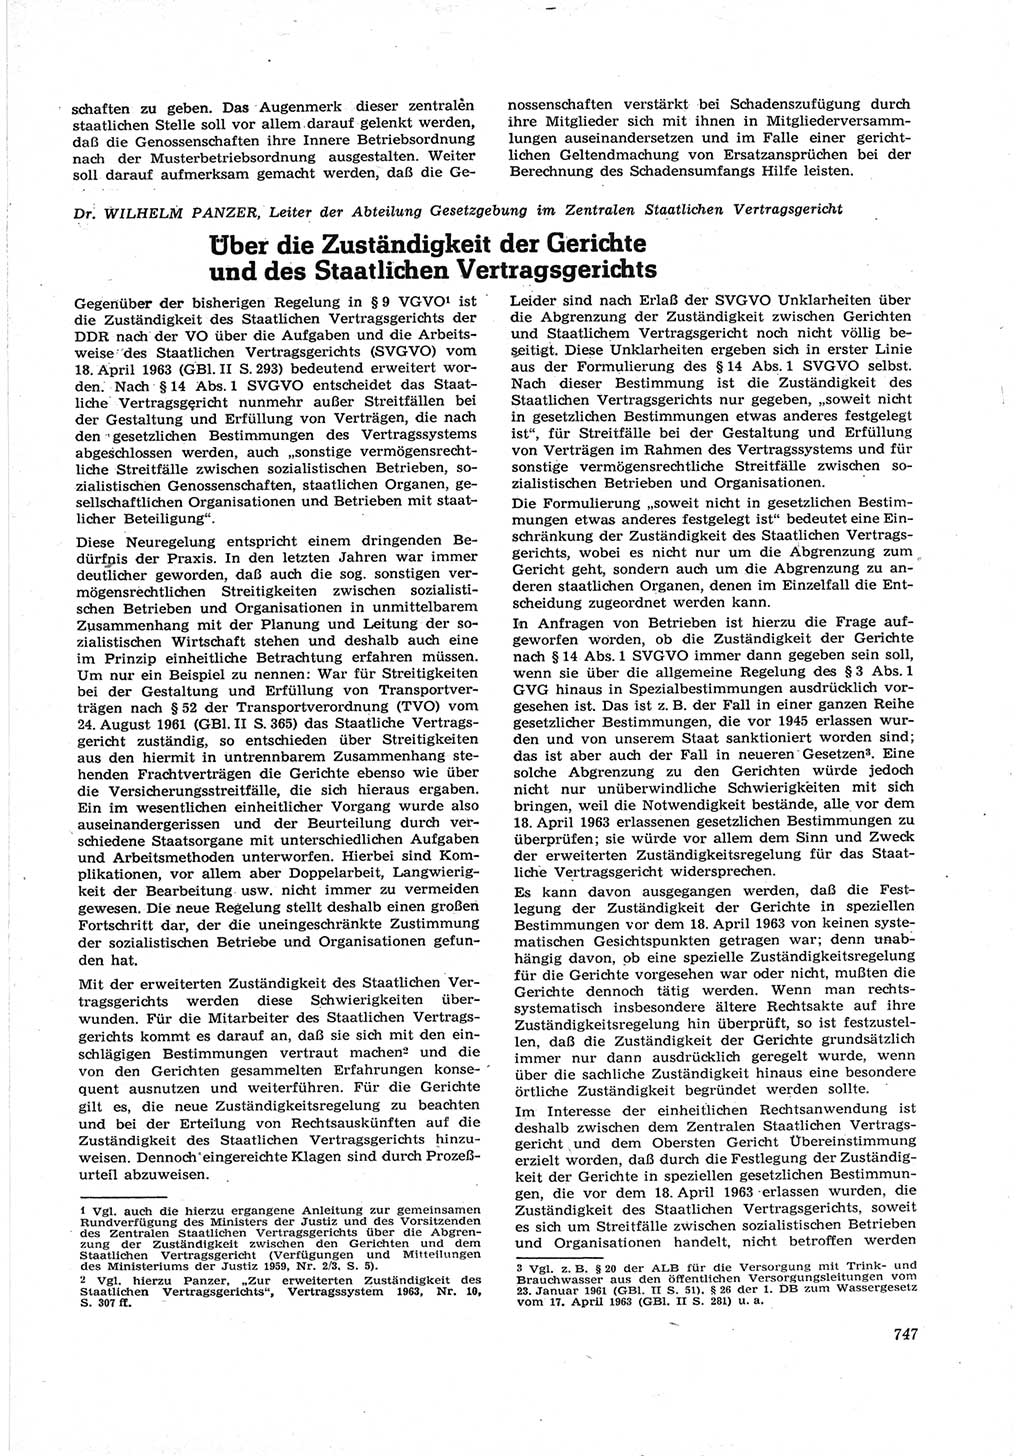 Neue Justiz (NJ), Zeitschrift für Recht und Rechtswissenschaft [Deutsche Demokratische Republik (DDR)], 17. Jahrgang 1963, Seite 747 (NJ DDR 1963, S. 747)